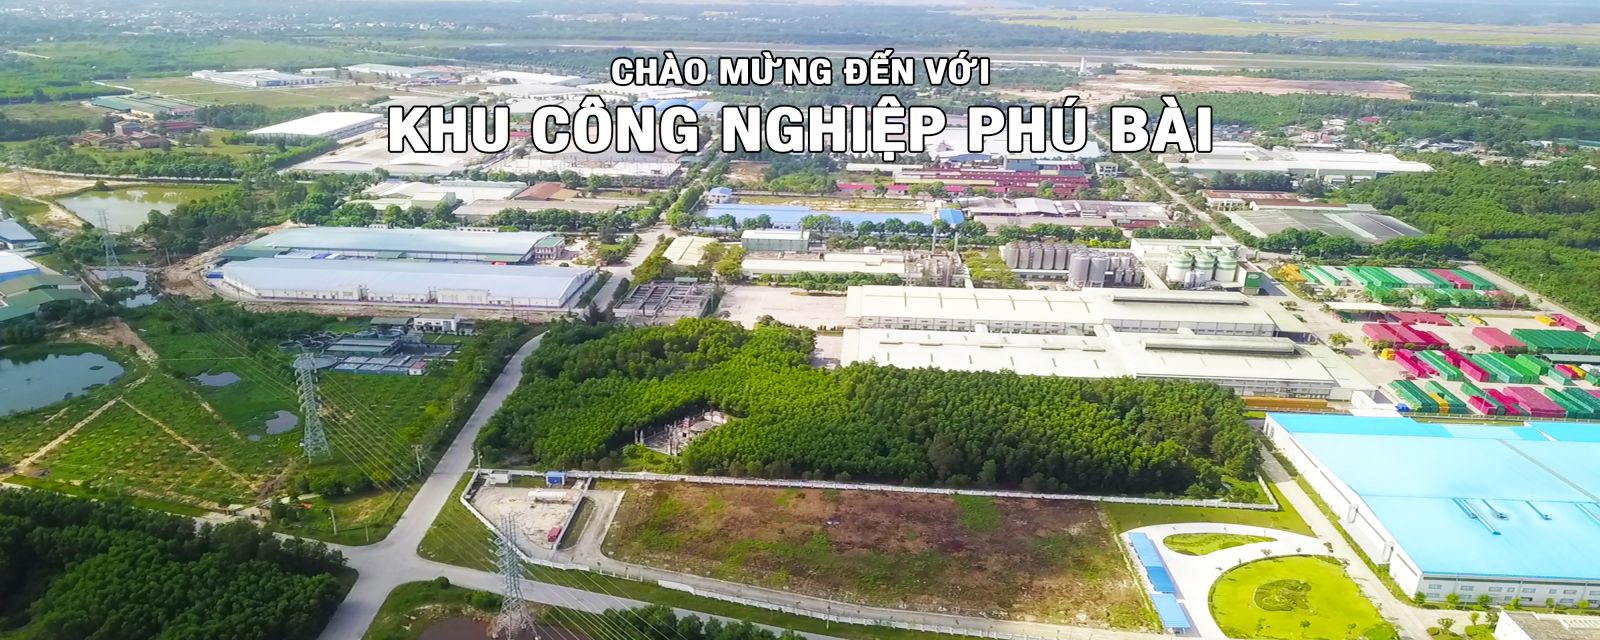 Khu công nghiệp Phú Bài